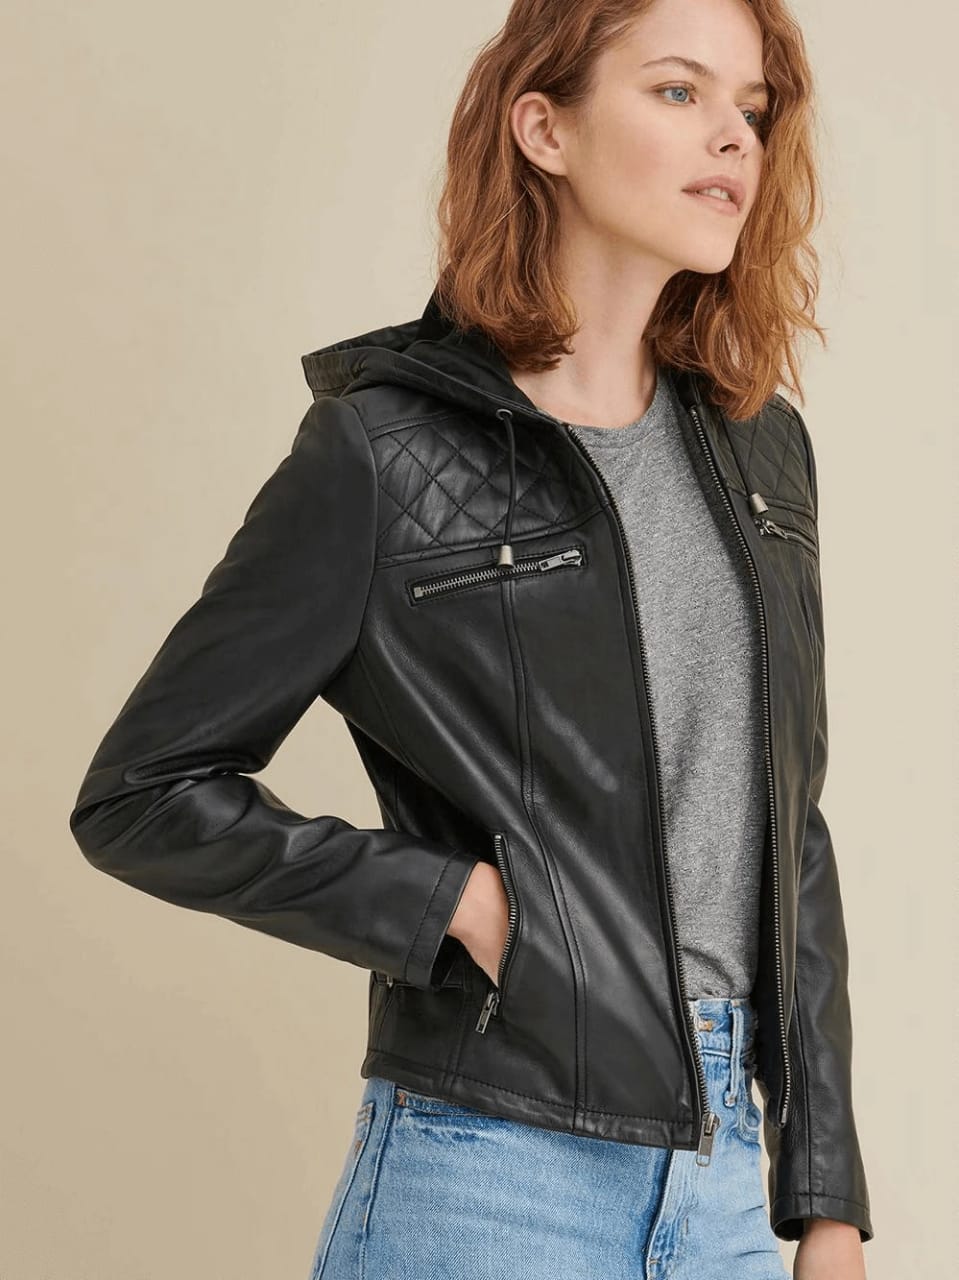 Removable Hooded Black Leather Jacket | Trendslocker